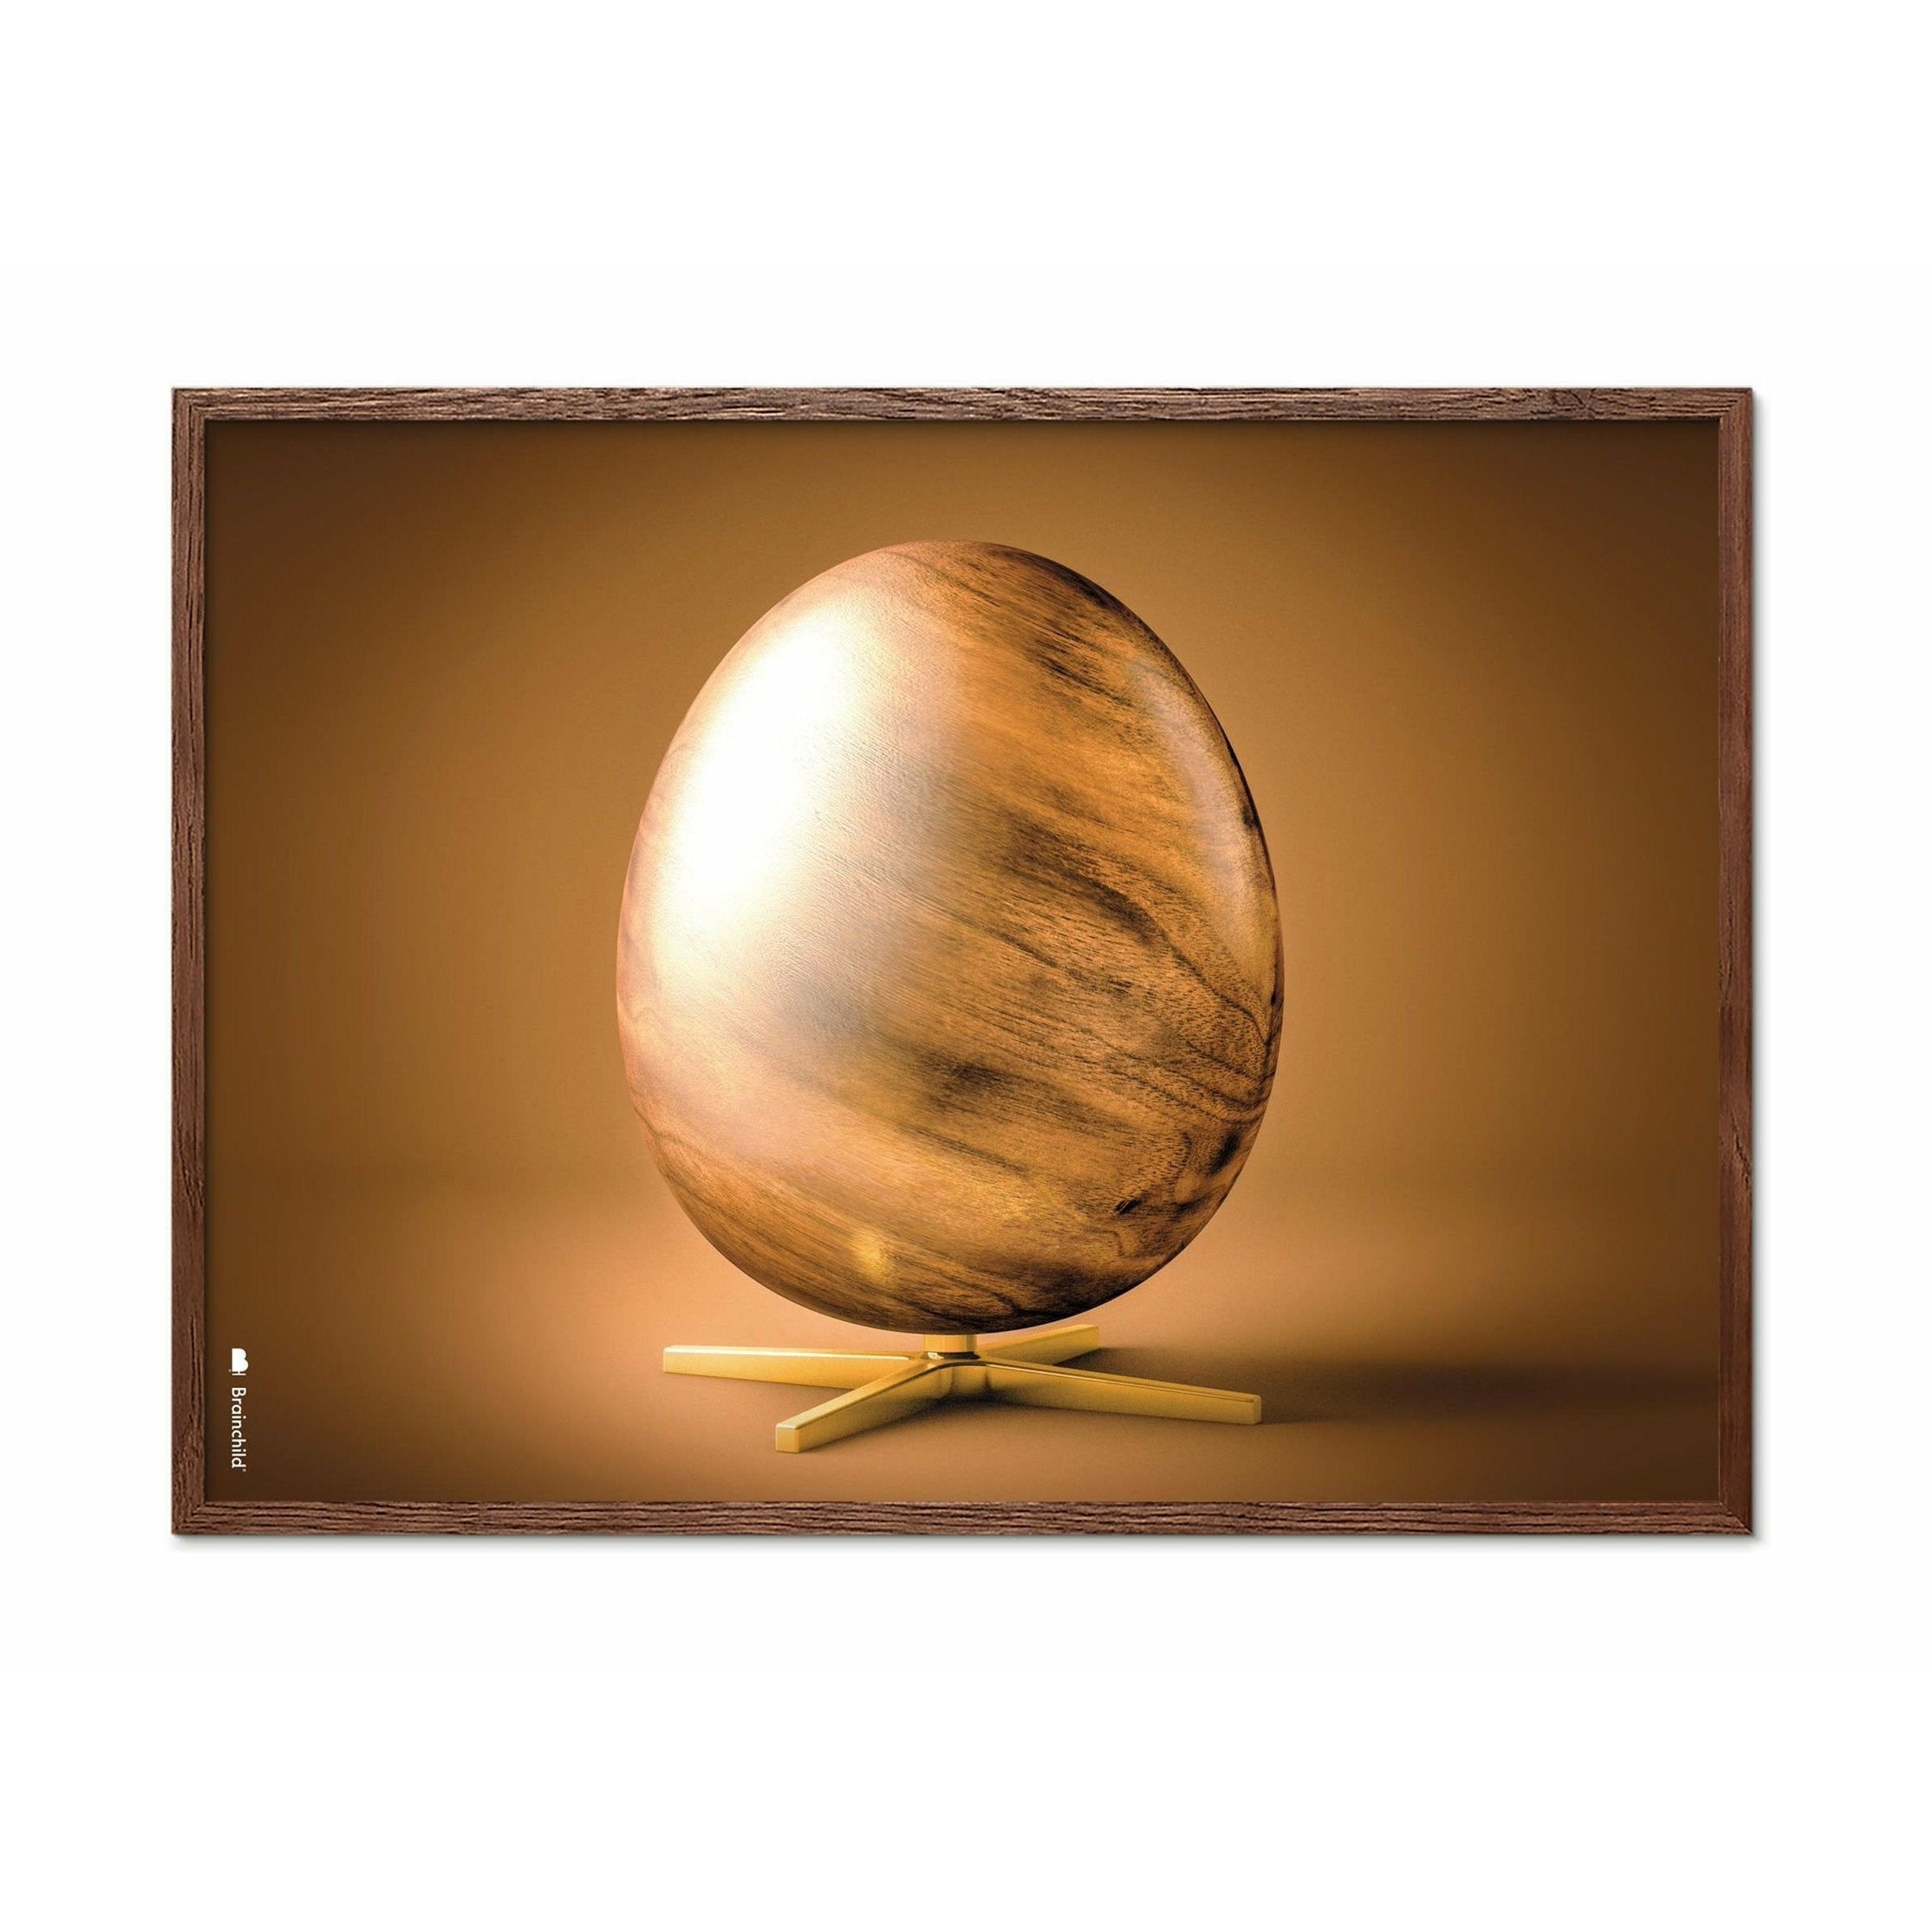 Plakát křížového formátu vajec z mozku, rám vyrobený z tmavého dřeva A5, hnědý